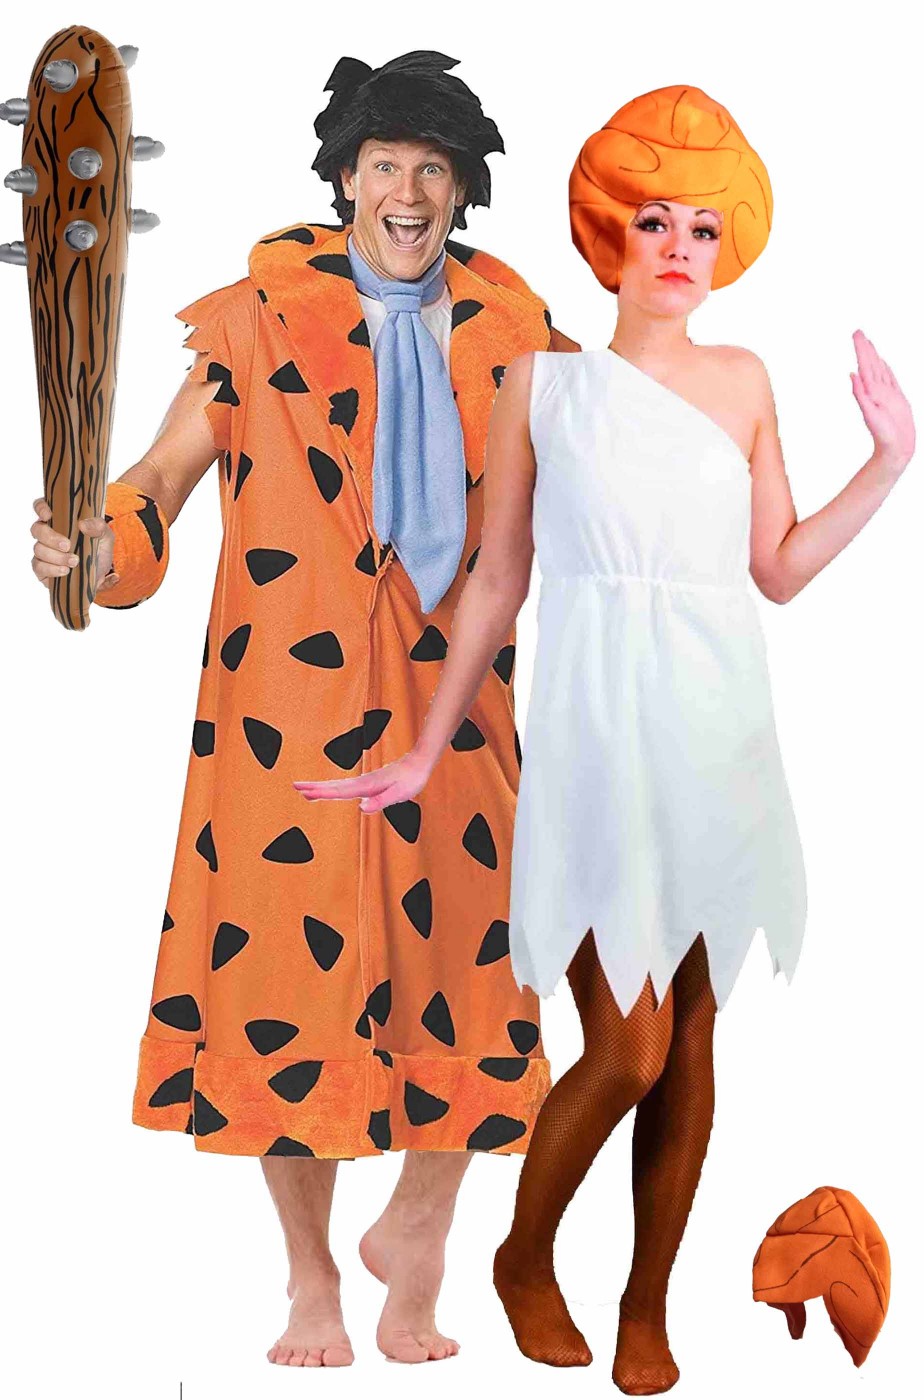 Funidelia | Costume Wilma Flintstones - I Flintstones per Donna Cartoni  Animati, Cavernicola - Costume per Adulto e Accessori per Feste, Carnevale  e